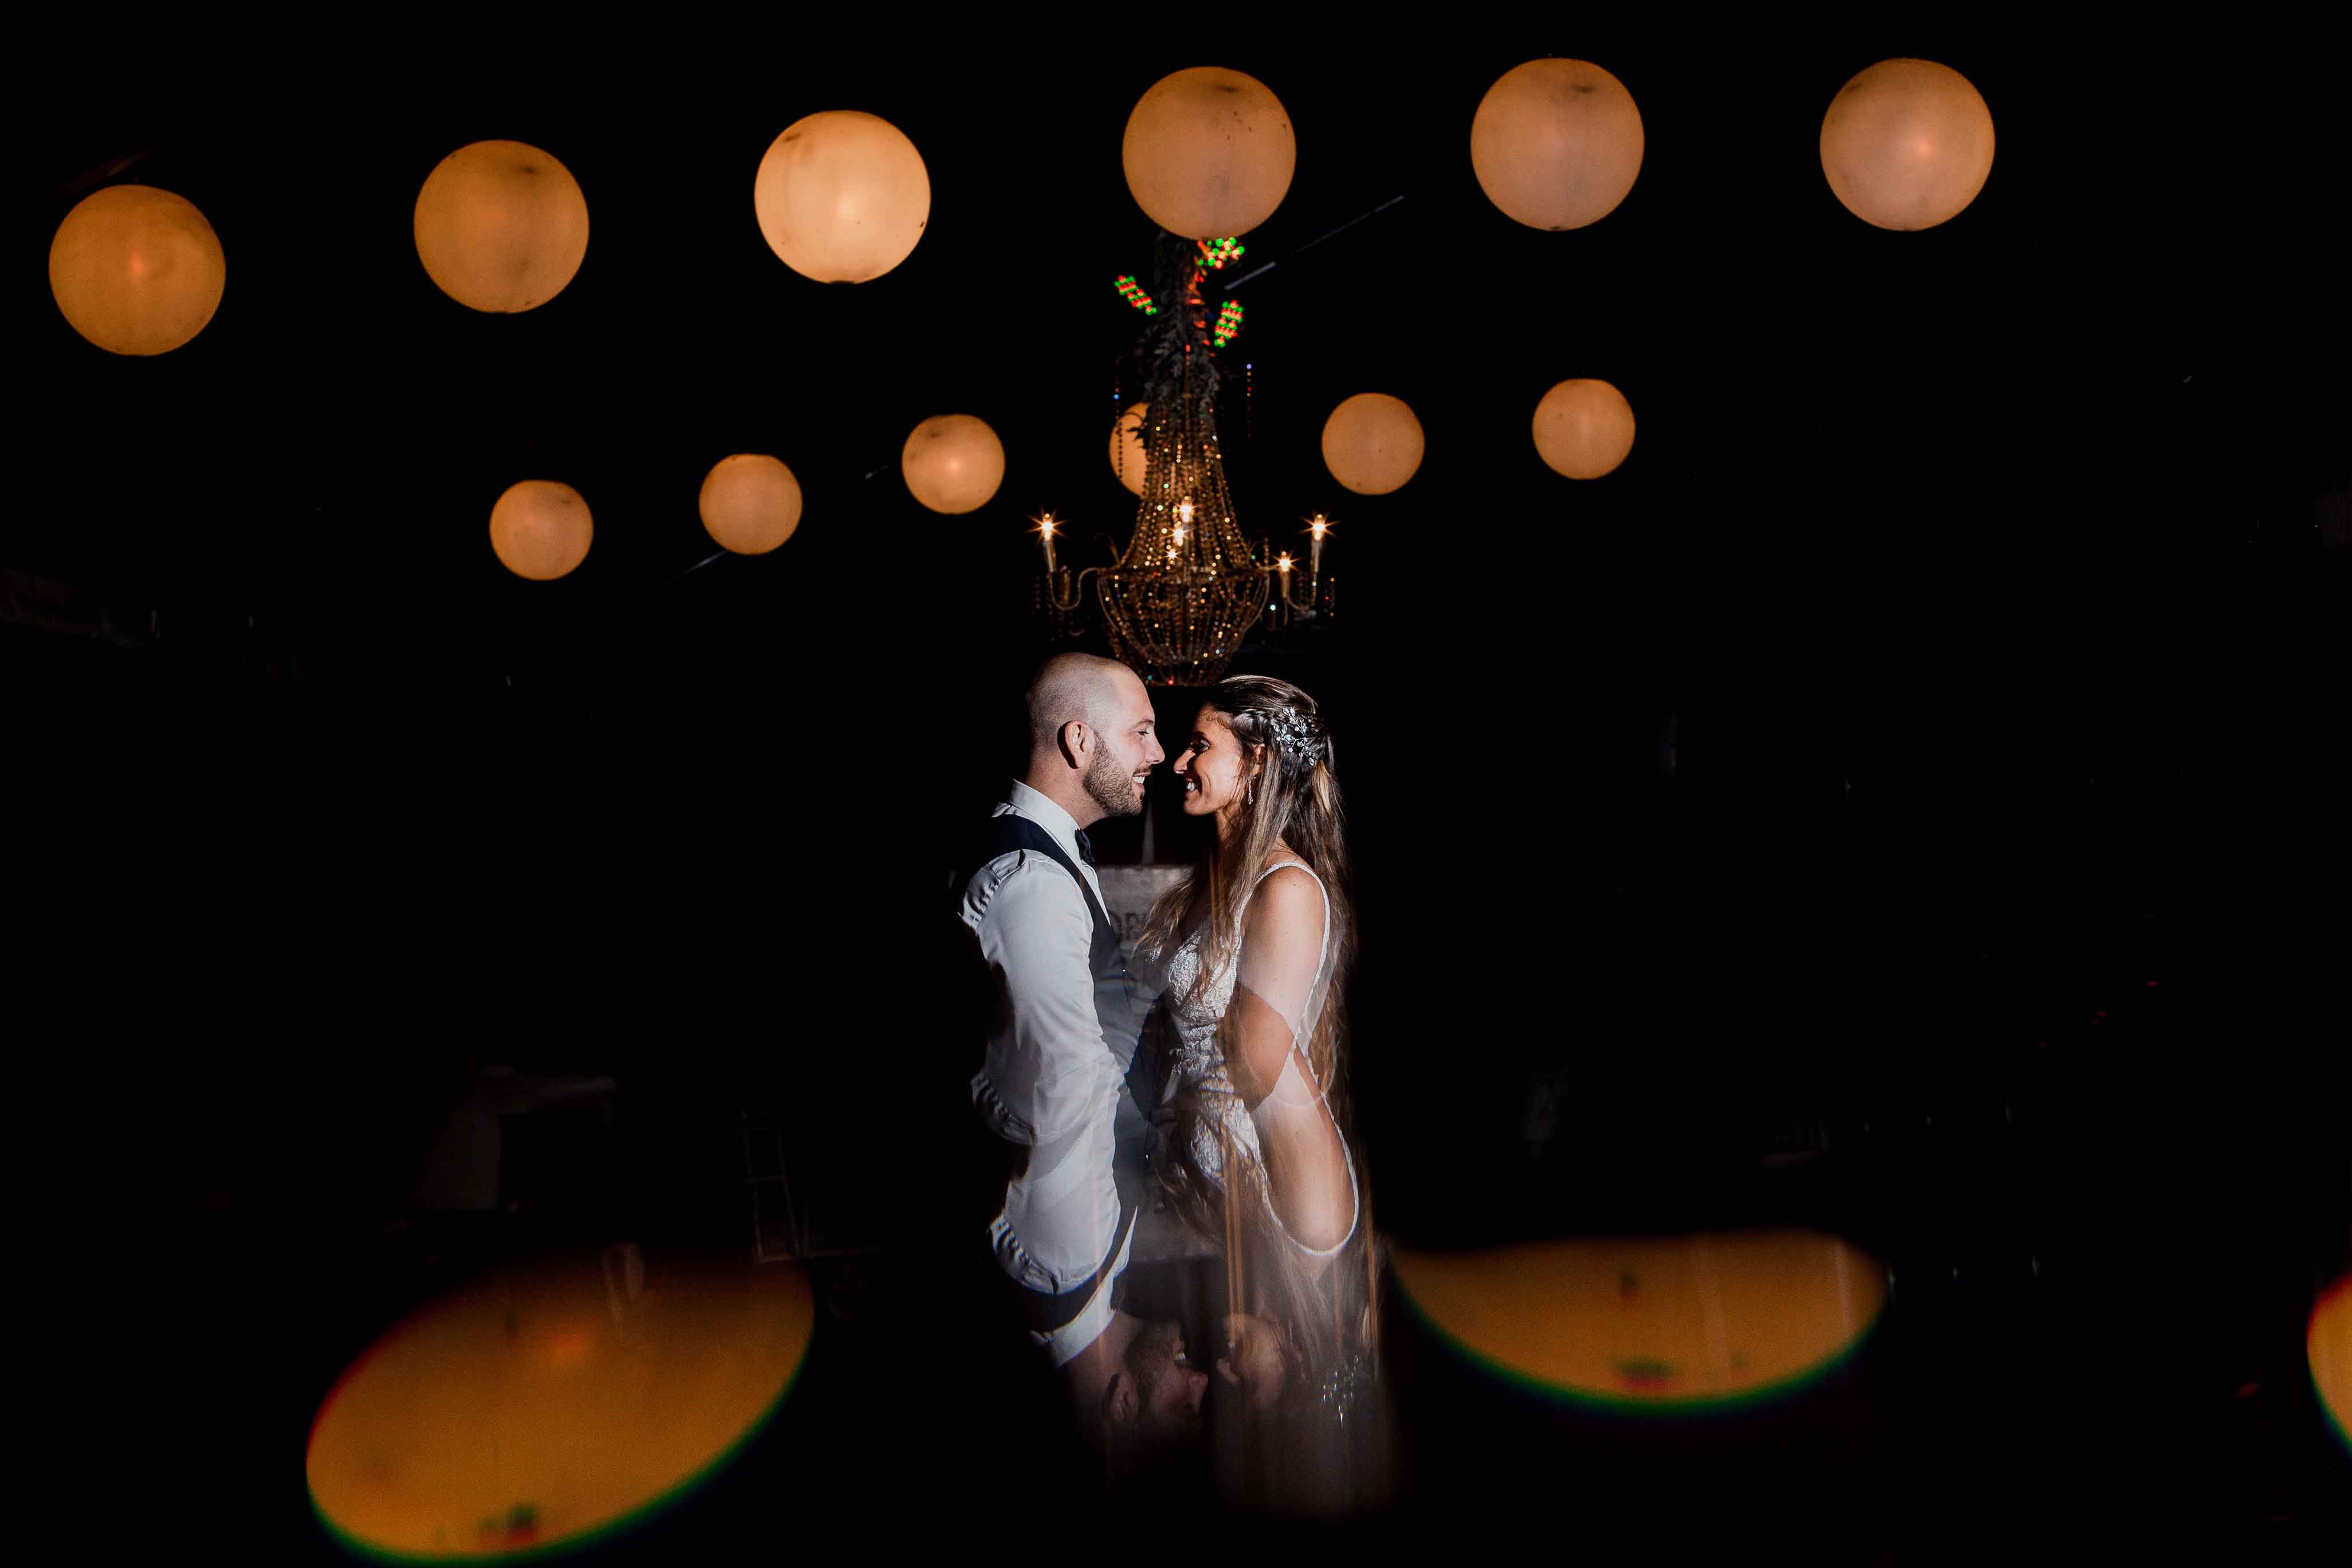 Fotos de la boda de Yoa y Roli en Rosario realizadas por Bucle Fotografias Flor Bosio y Caro Clerici